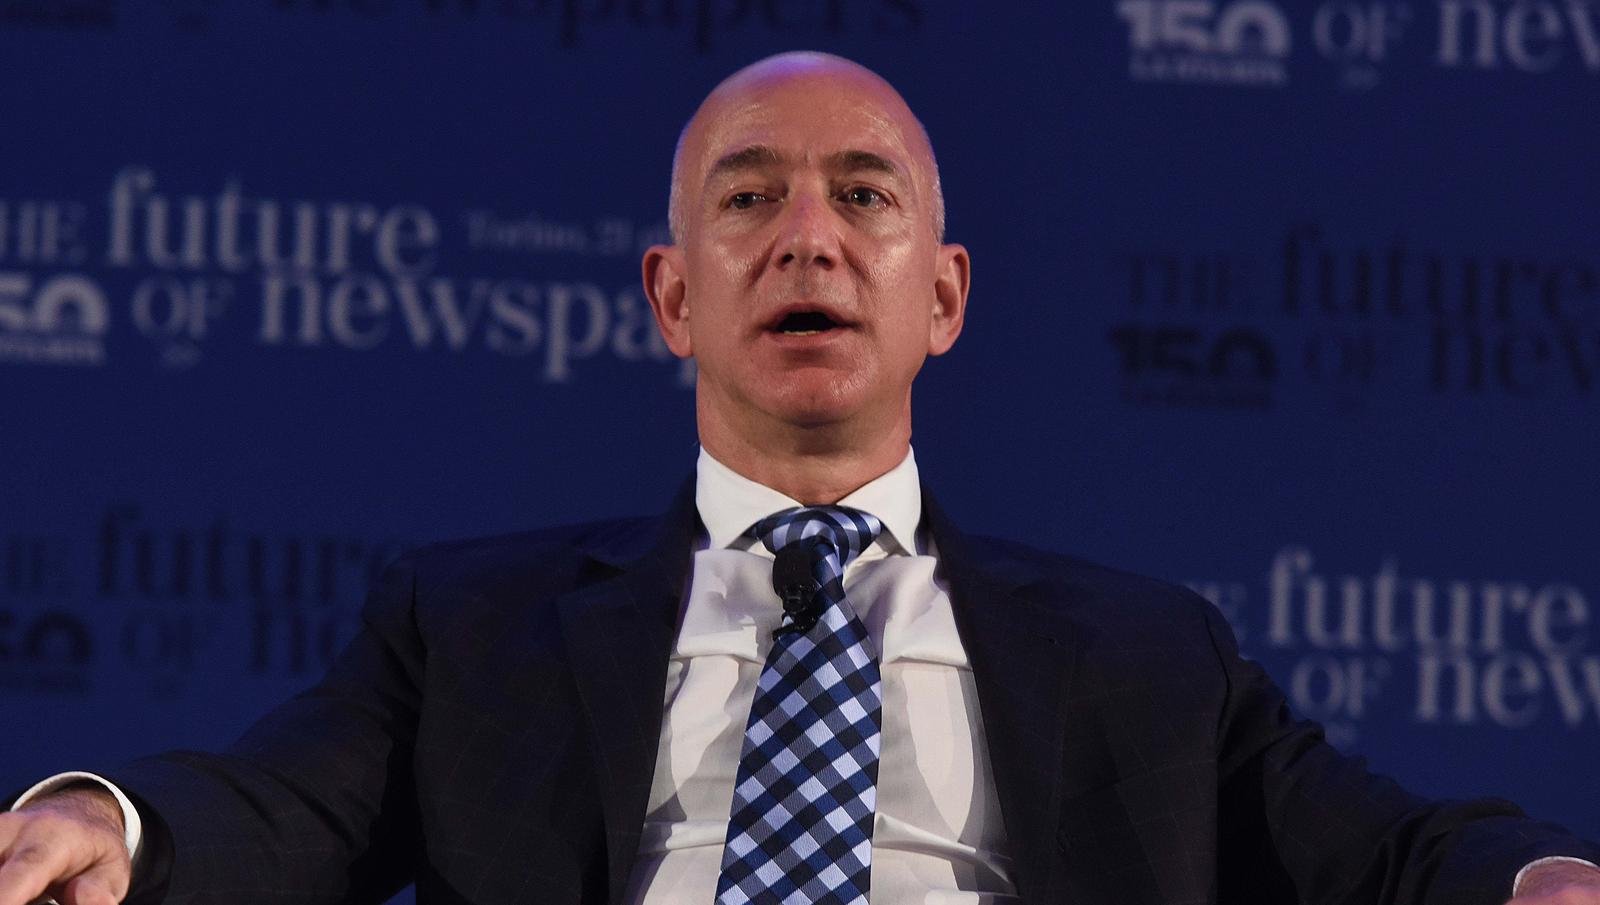  Jeff Bezos fa cassa: ecco quanti miliardi ha incassato